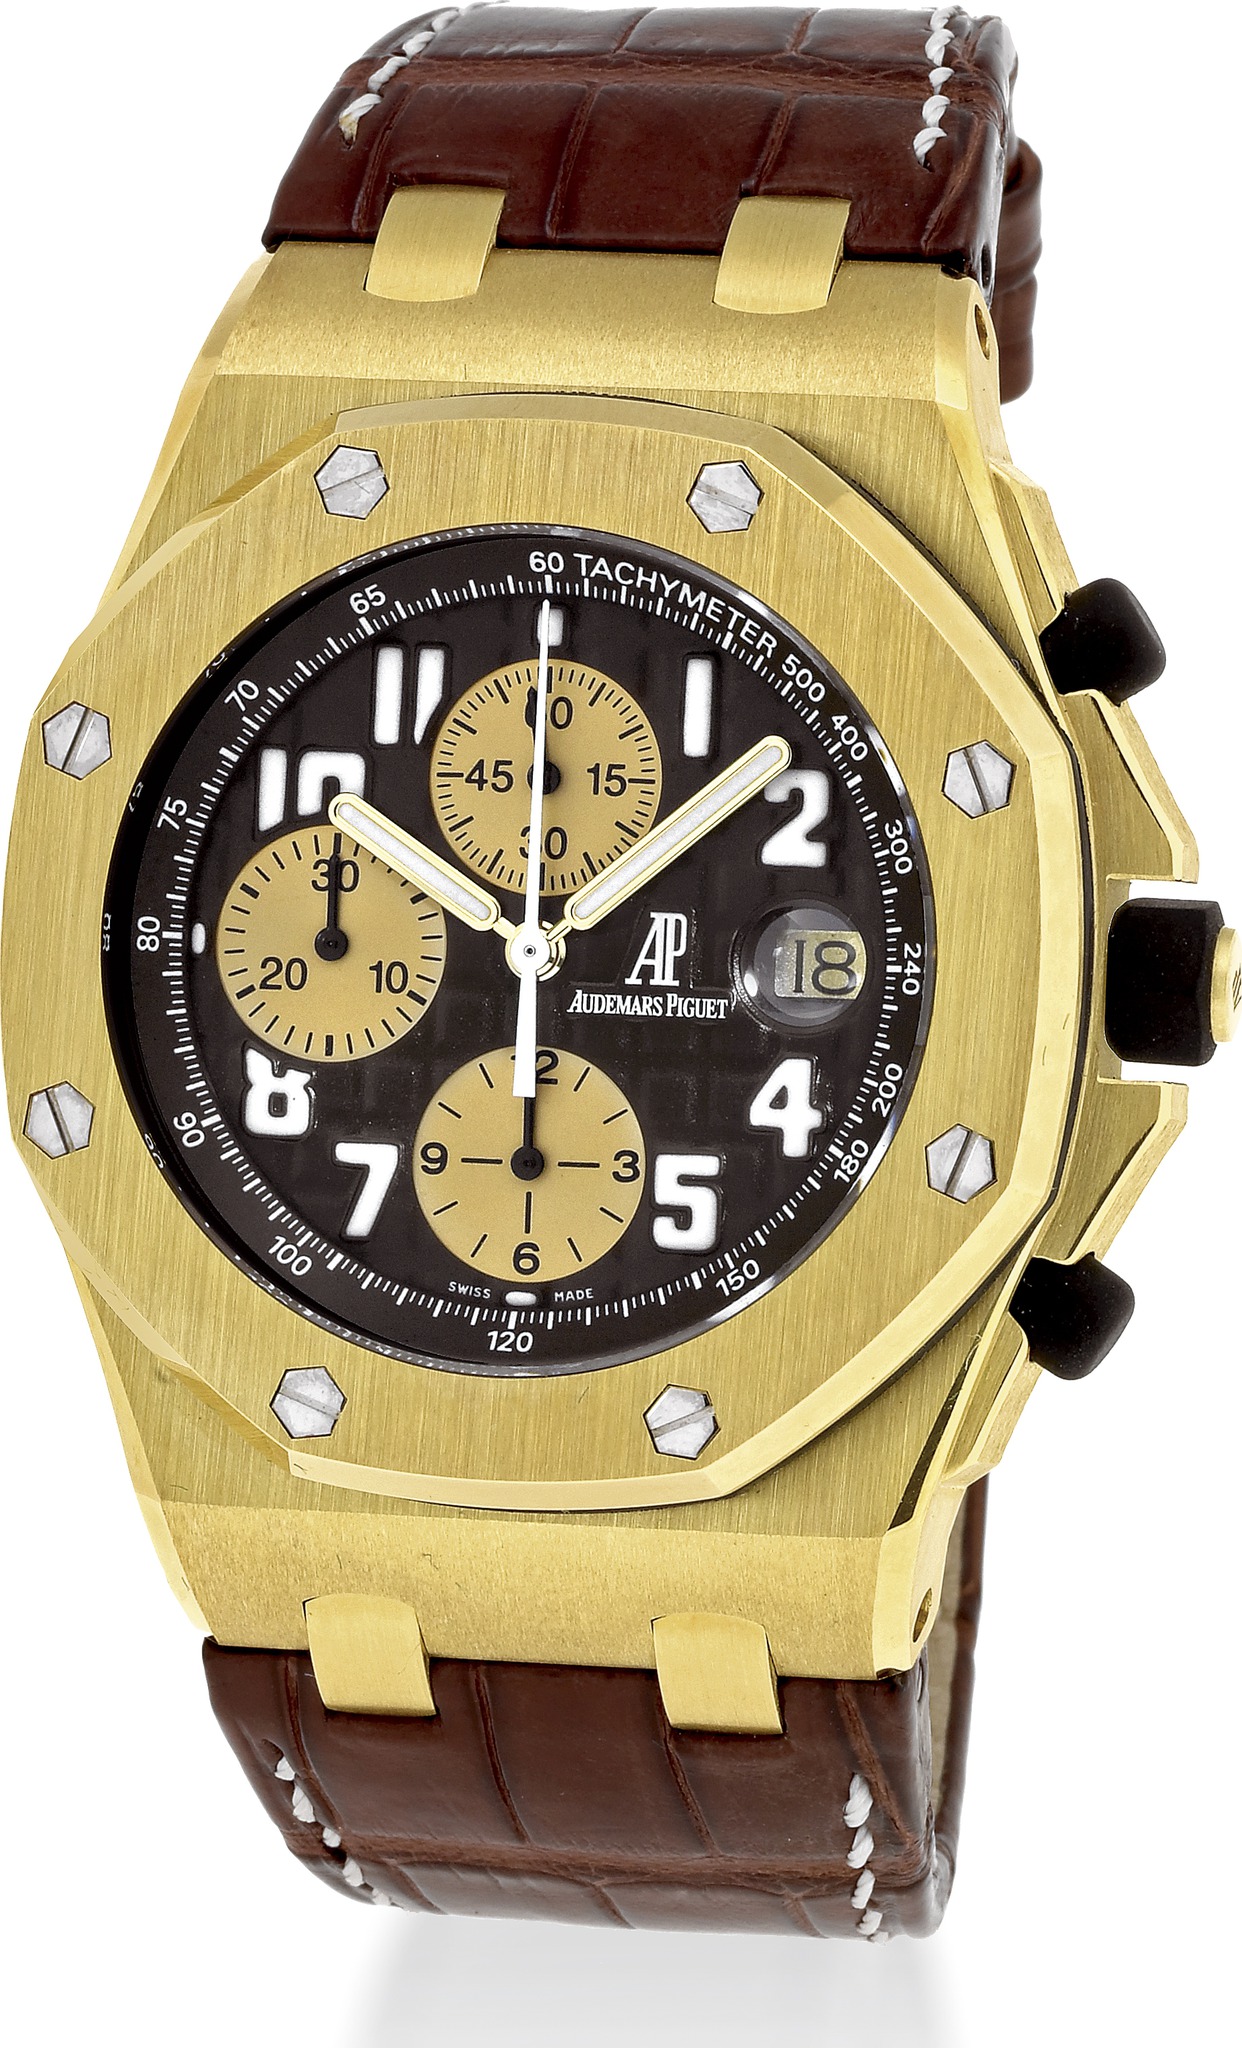 Audemars Piguet Royal Oak Offshore Arnold Schwarzenegger Yellow Gold watch REF: 26007BA.OO.D088CR.01